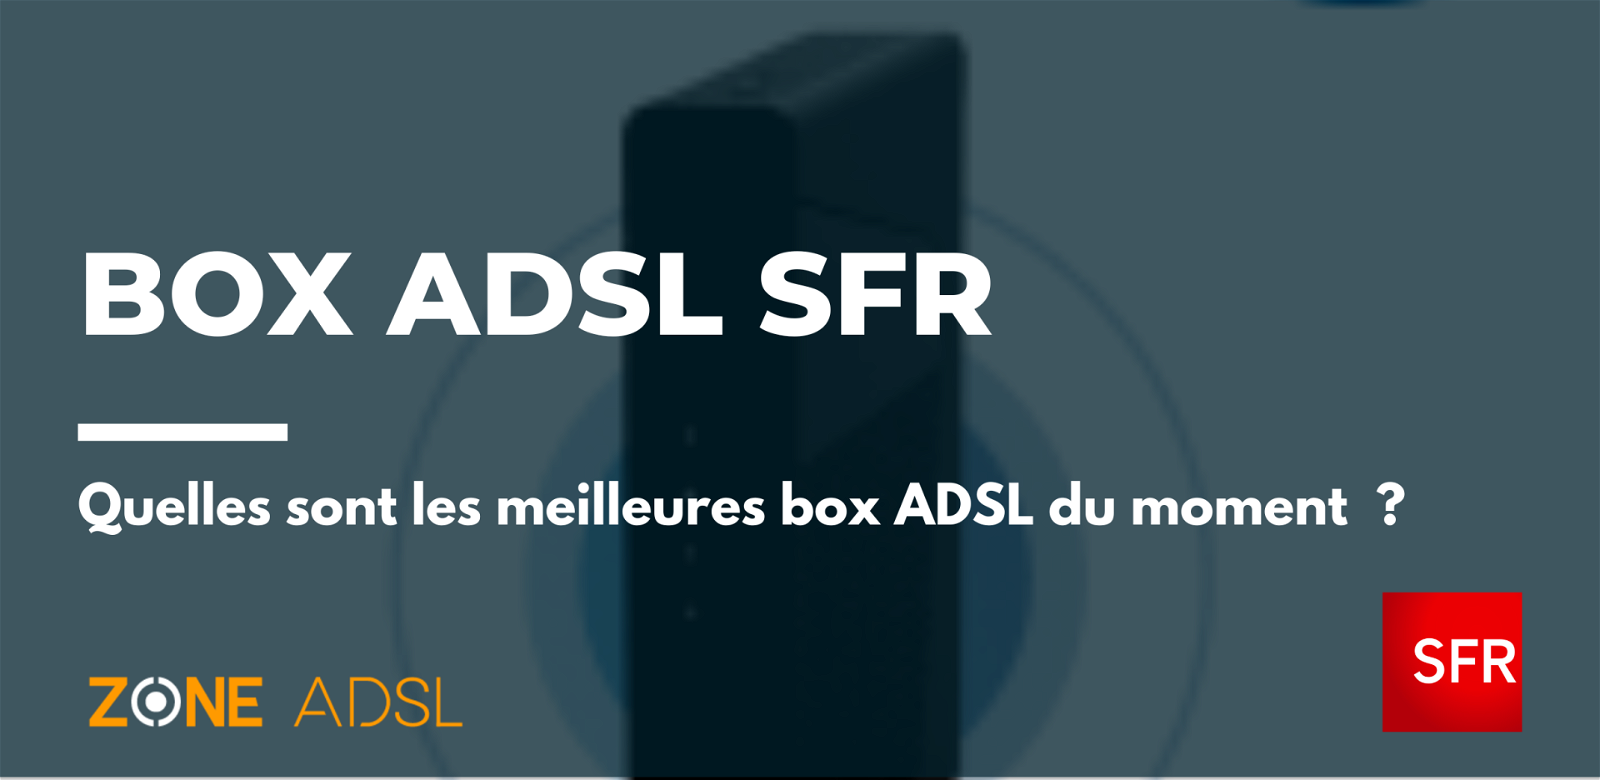 Box ADSL SFR